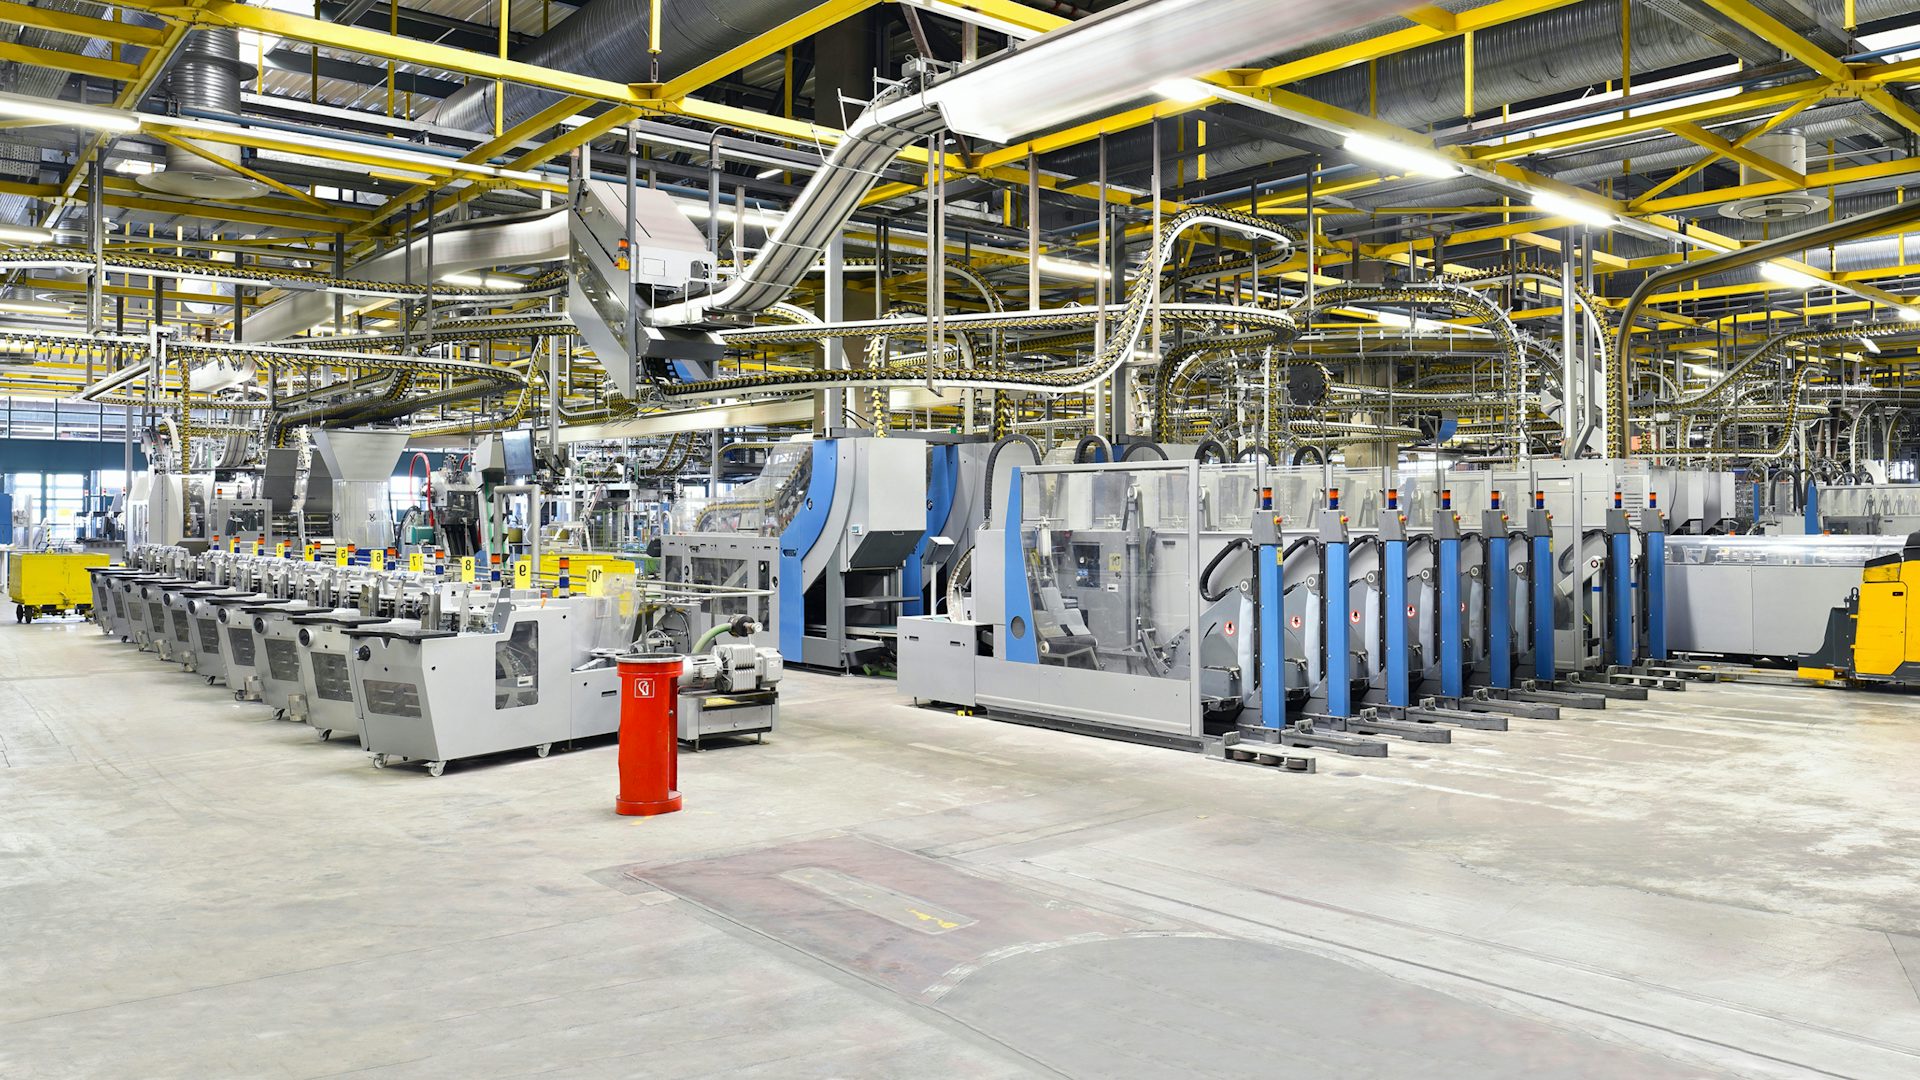 Vue panoramique d'une chaîne de montage en usine.